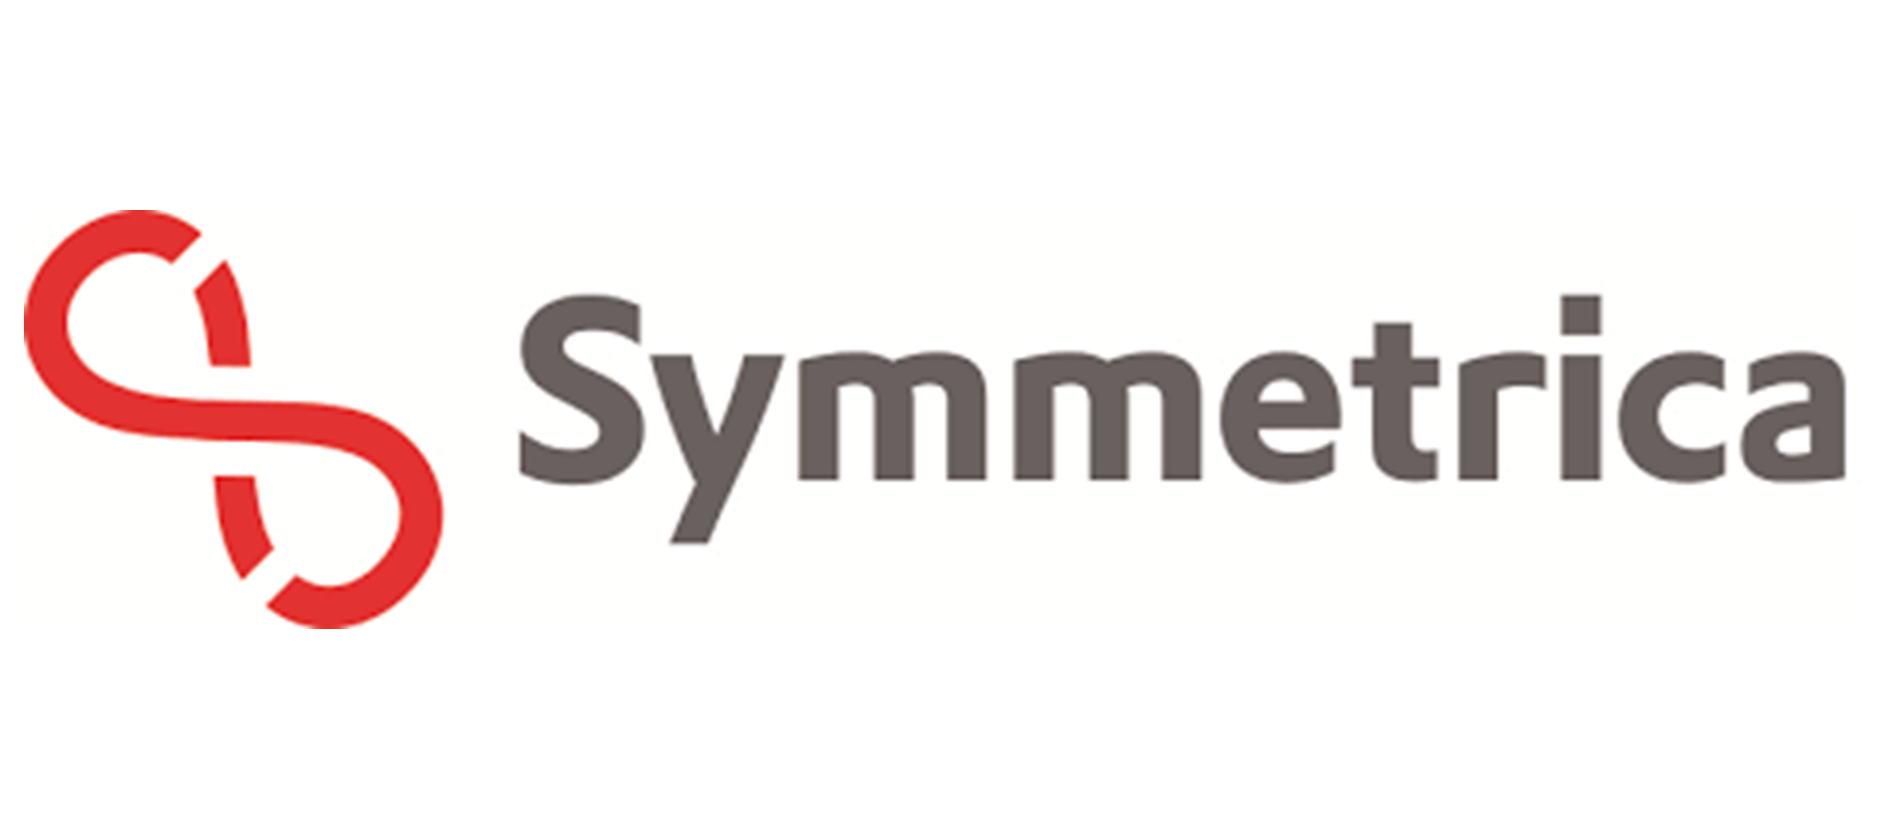 symetrica